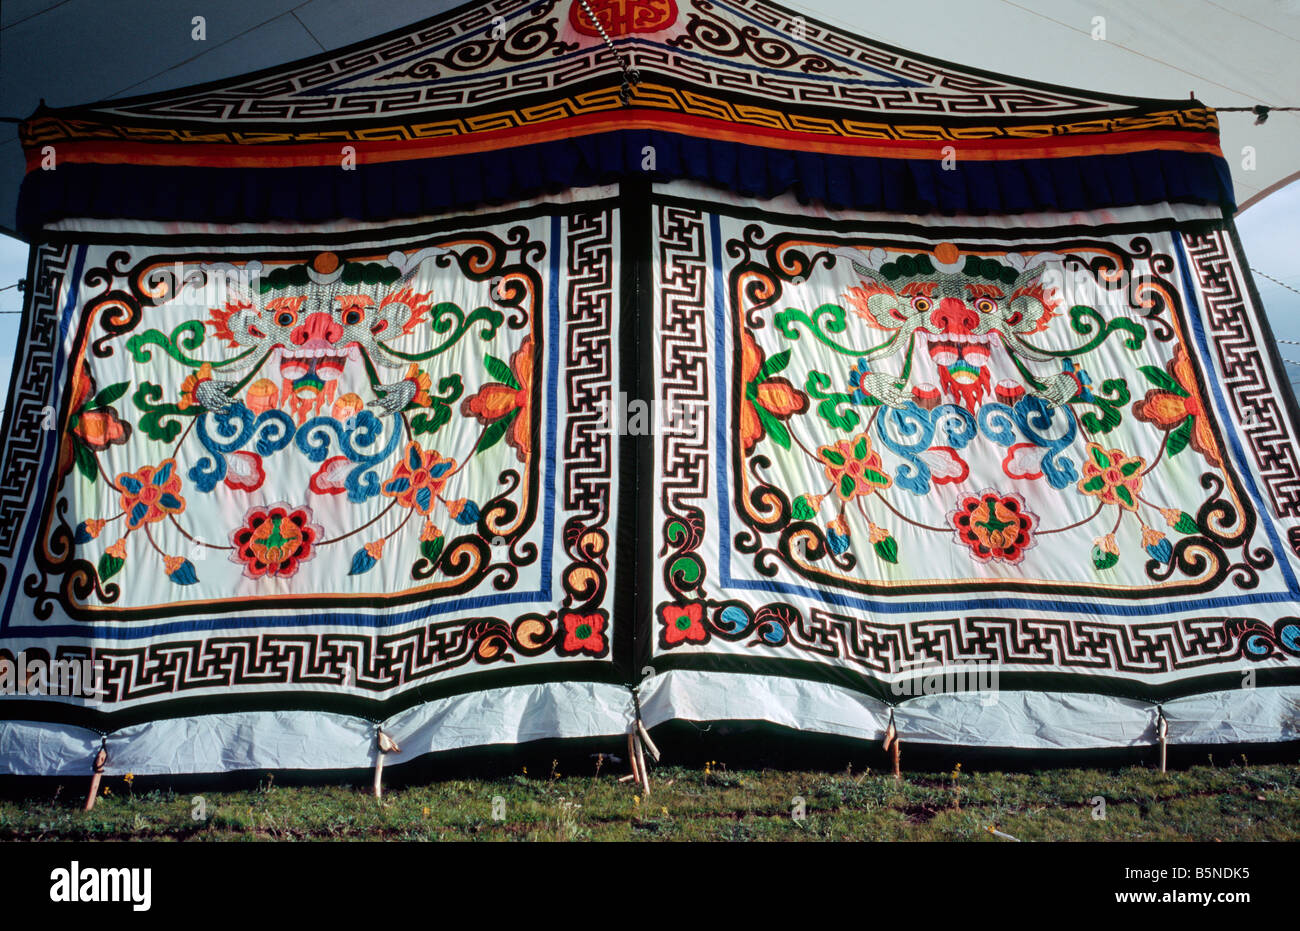 5 agosto 2006 - tradizionale ricamato tenda tibetana con Rain cover sul sito dell'Litang horse festival in Cina. Foto Stock